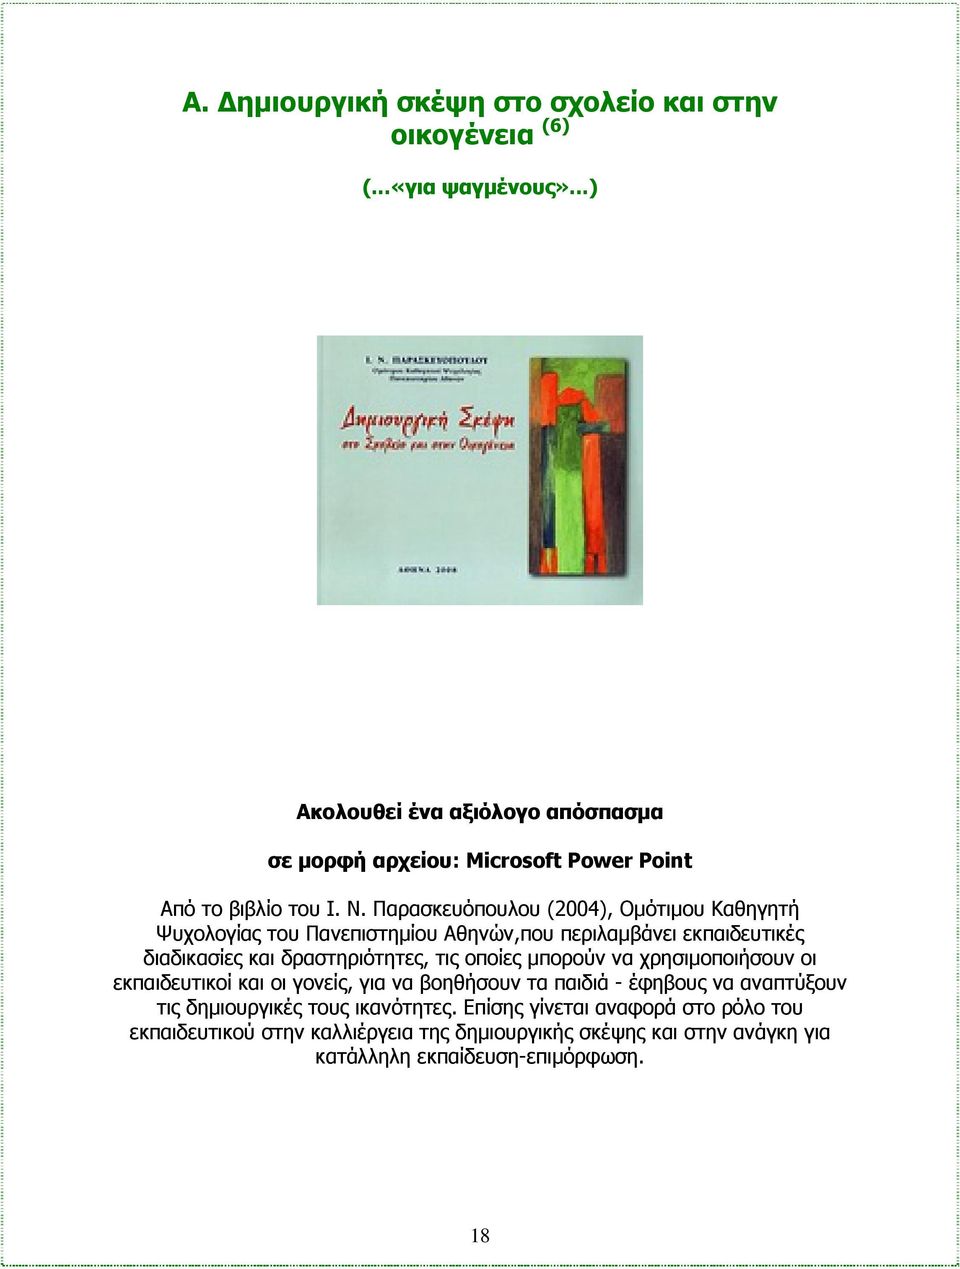 Παρασκευόπουλου (2004), Ομότιμου Καθηγητή Ψυχολογίας του Πανεπιστημίου Αθηνών,που περιλαμβάνει εκπαιδευτικές διαδικασίες και δραστηριότητες, τις οποίες